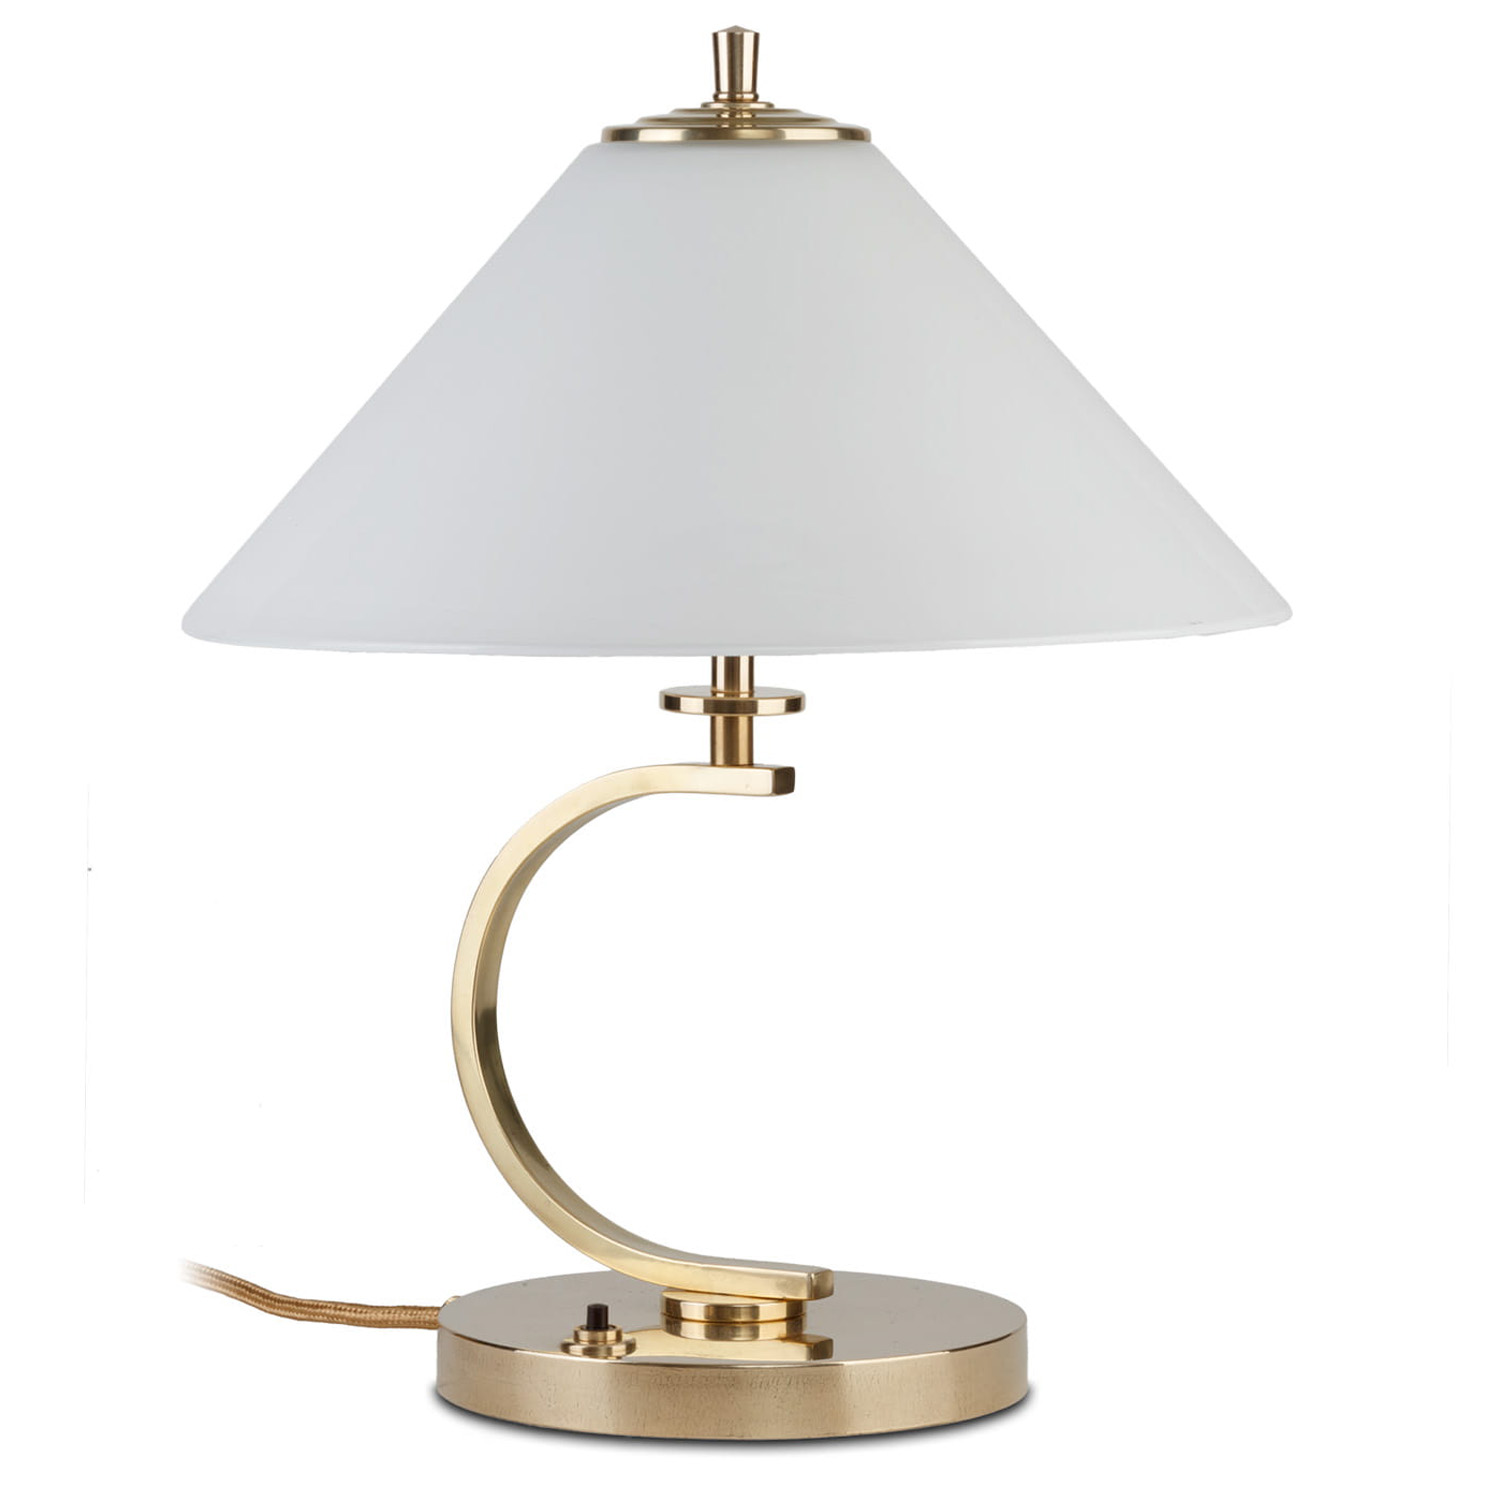 Kleine Messing-Tischlampe mit Kegel-Glasschirm: Zeitlose, kleine Nachttischlampe mit Glasschirm, hier in Messing poliert, unlackiert